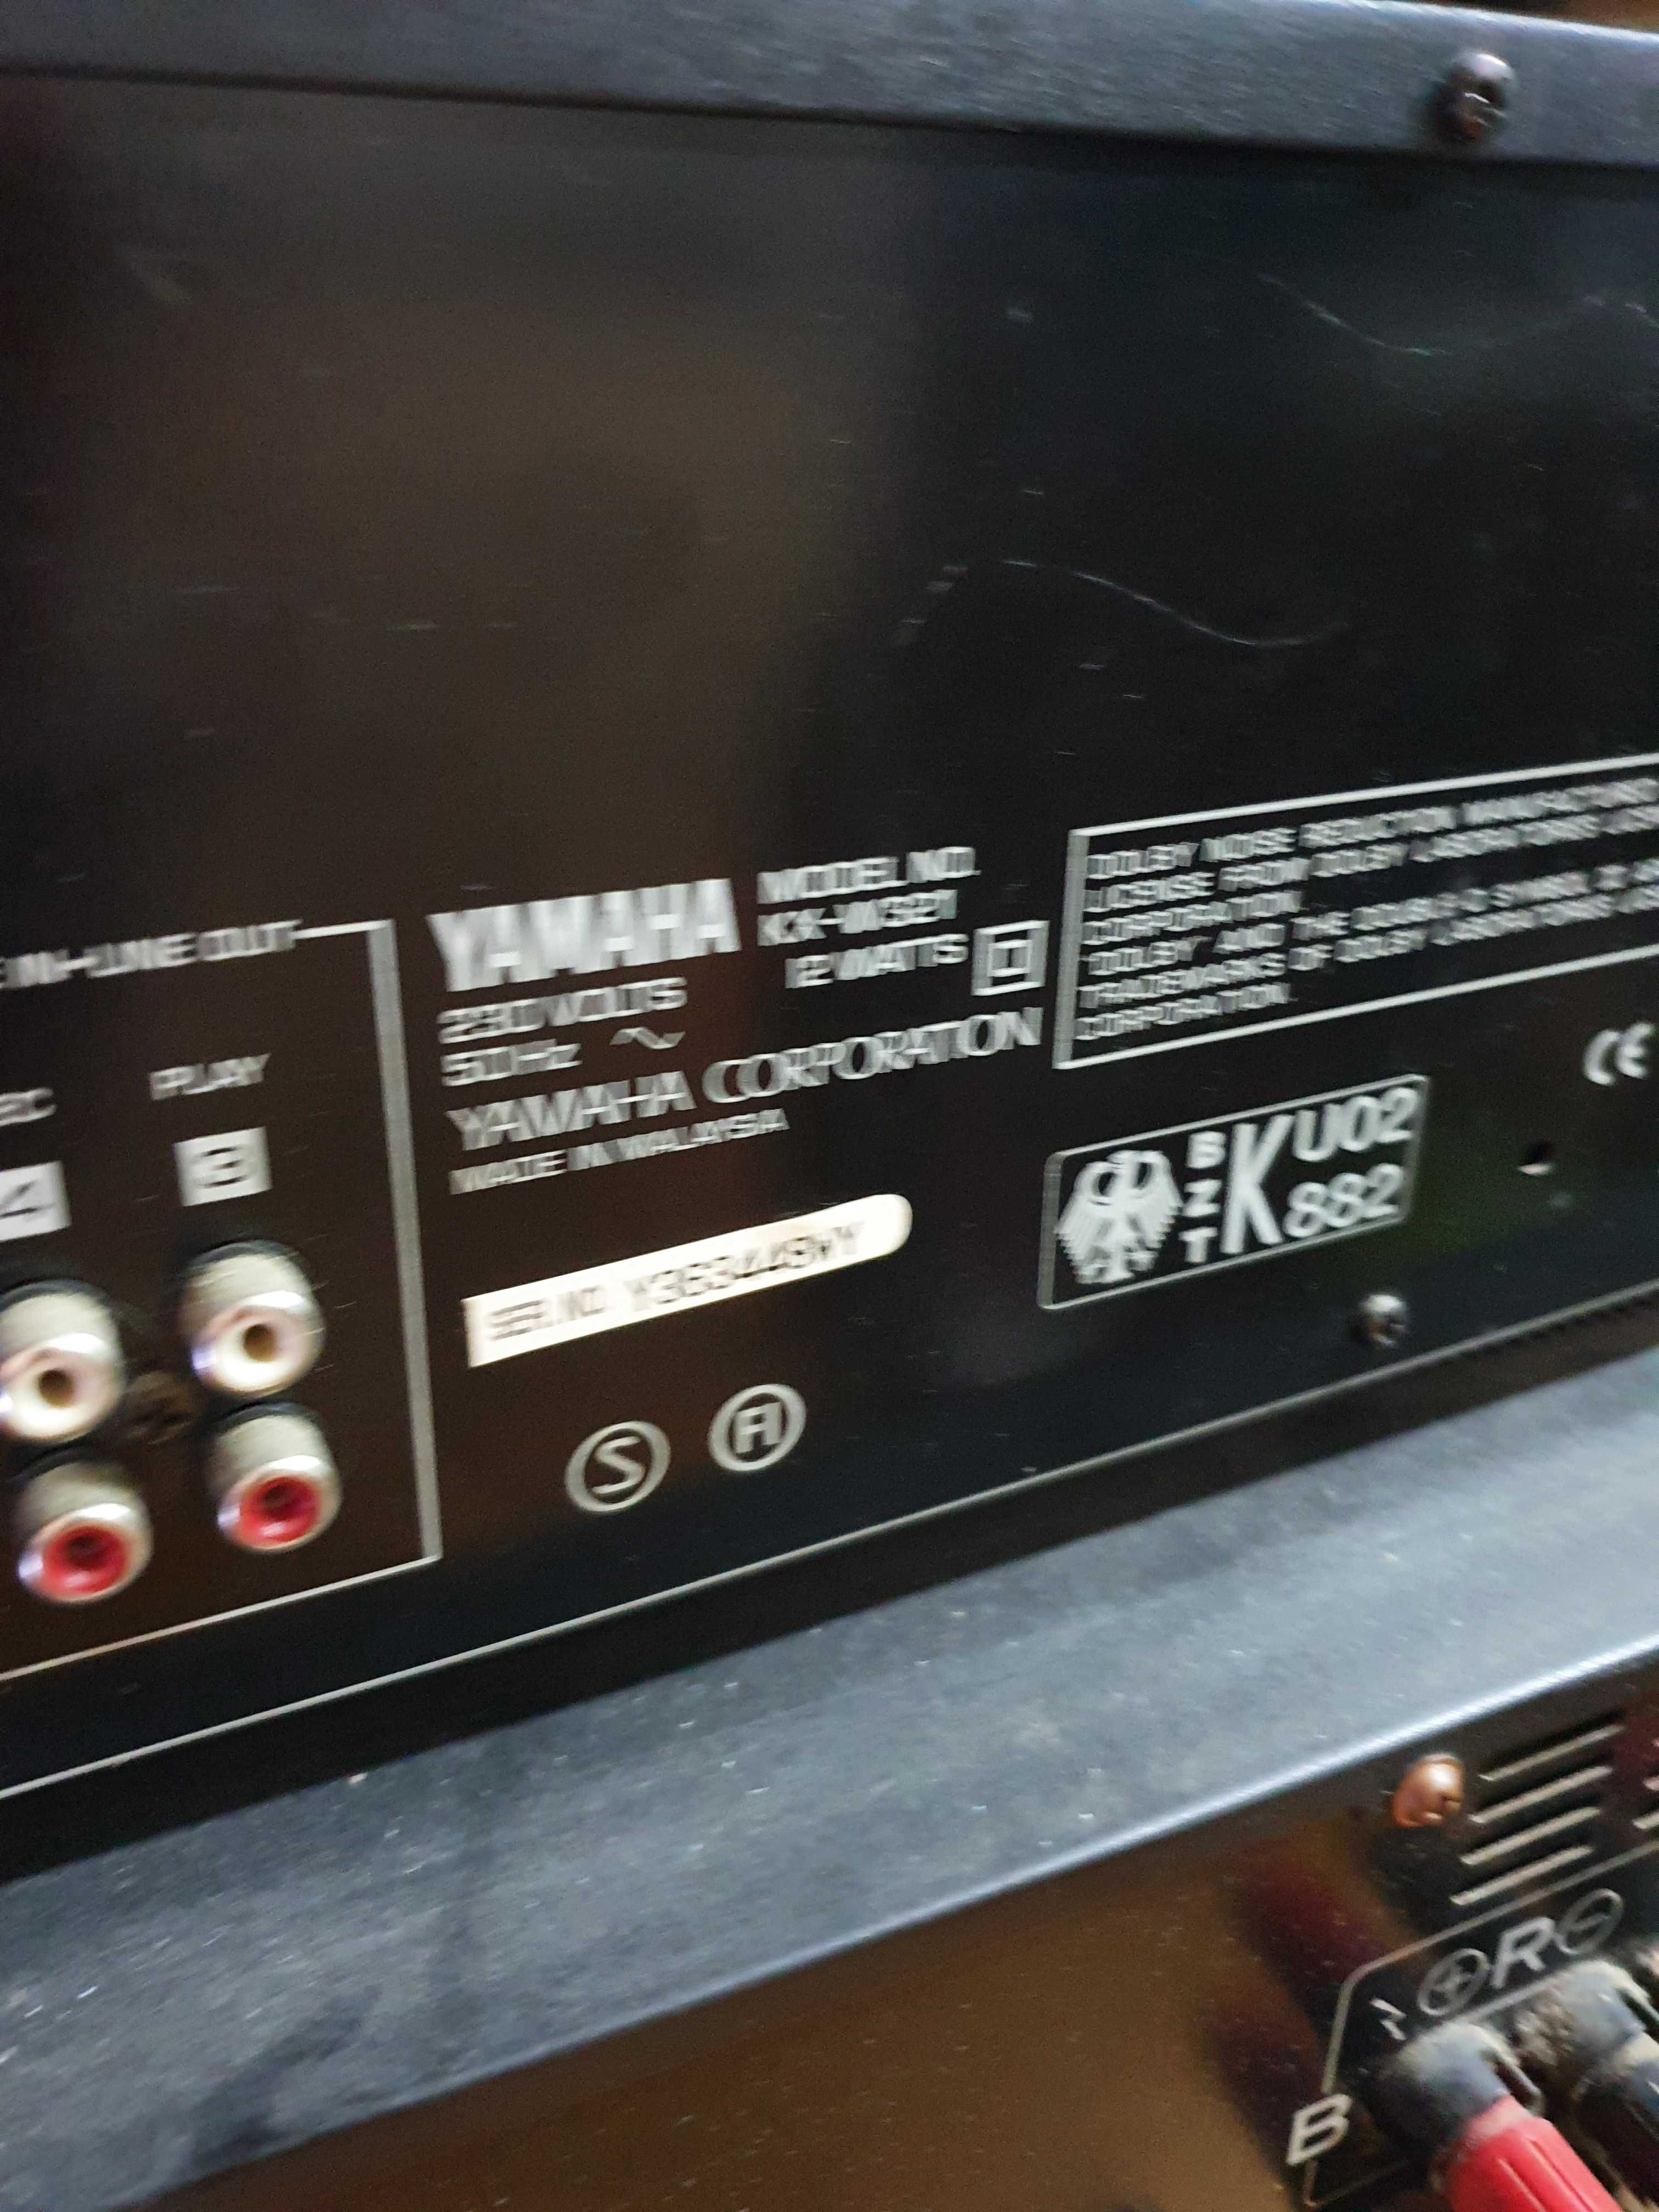 Pioneer Amplificador A 333 / YAMAHA rádio tx 480/ deck KX-W321 k7